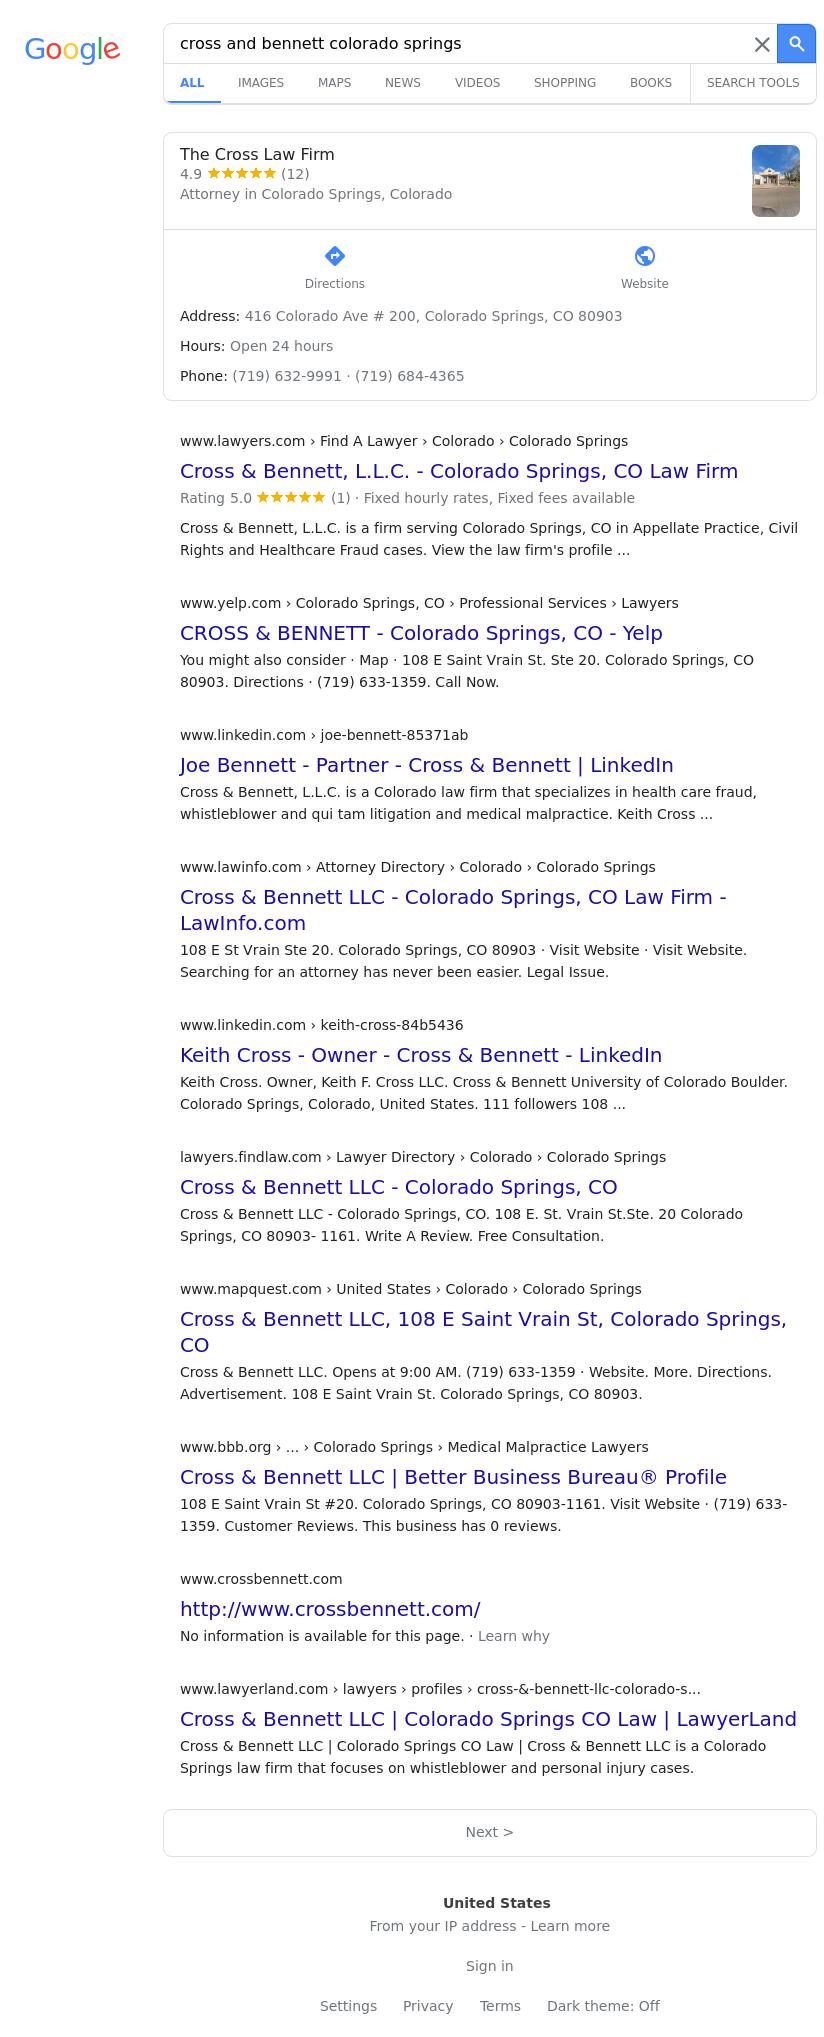 Cross & Bennett LLC - Colorado Springs CO Lawyers